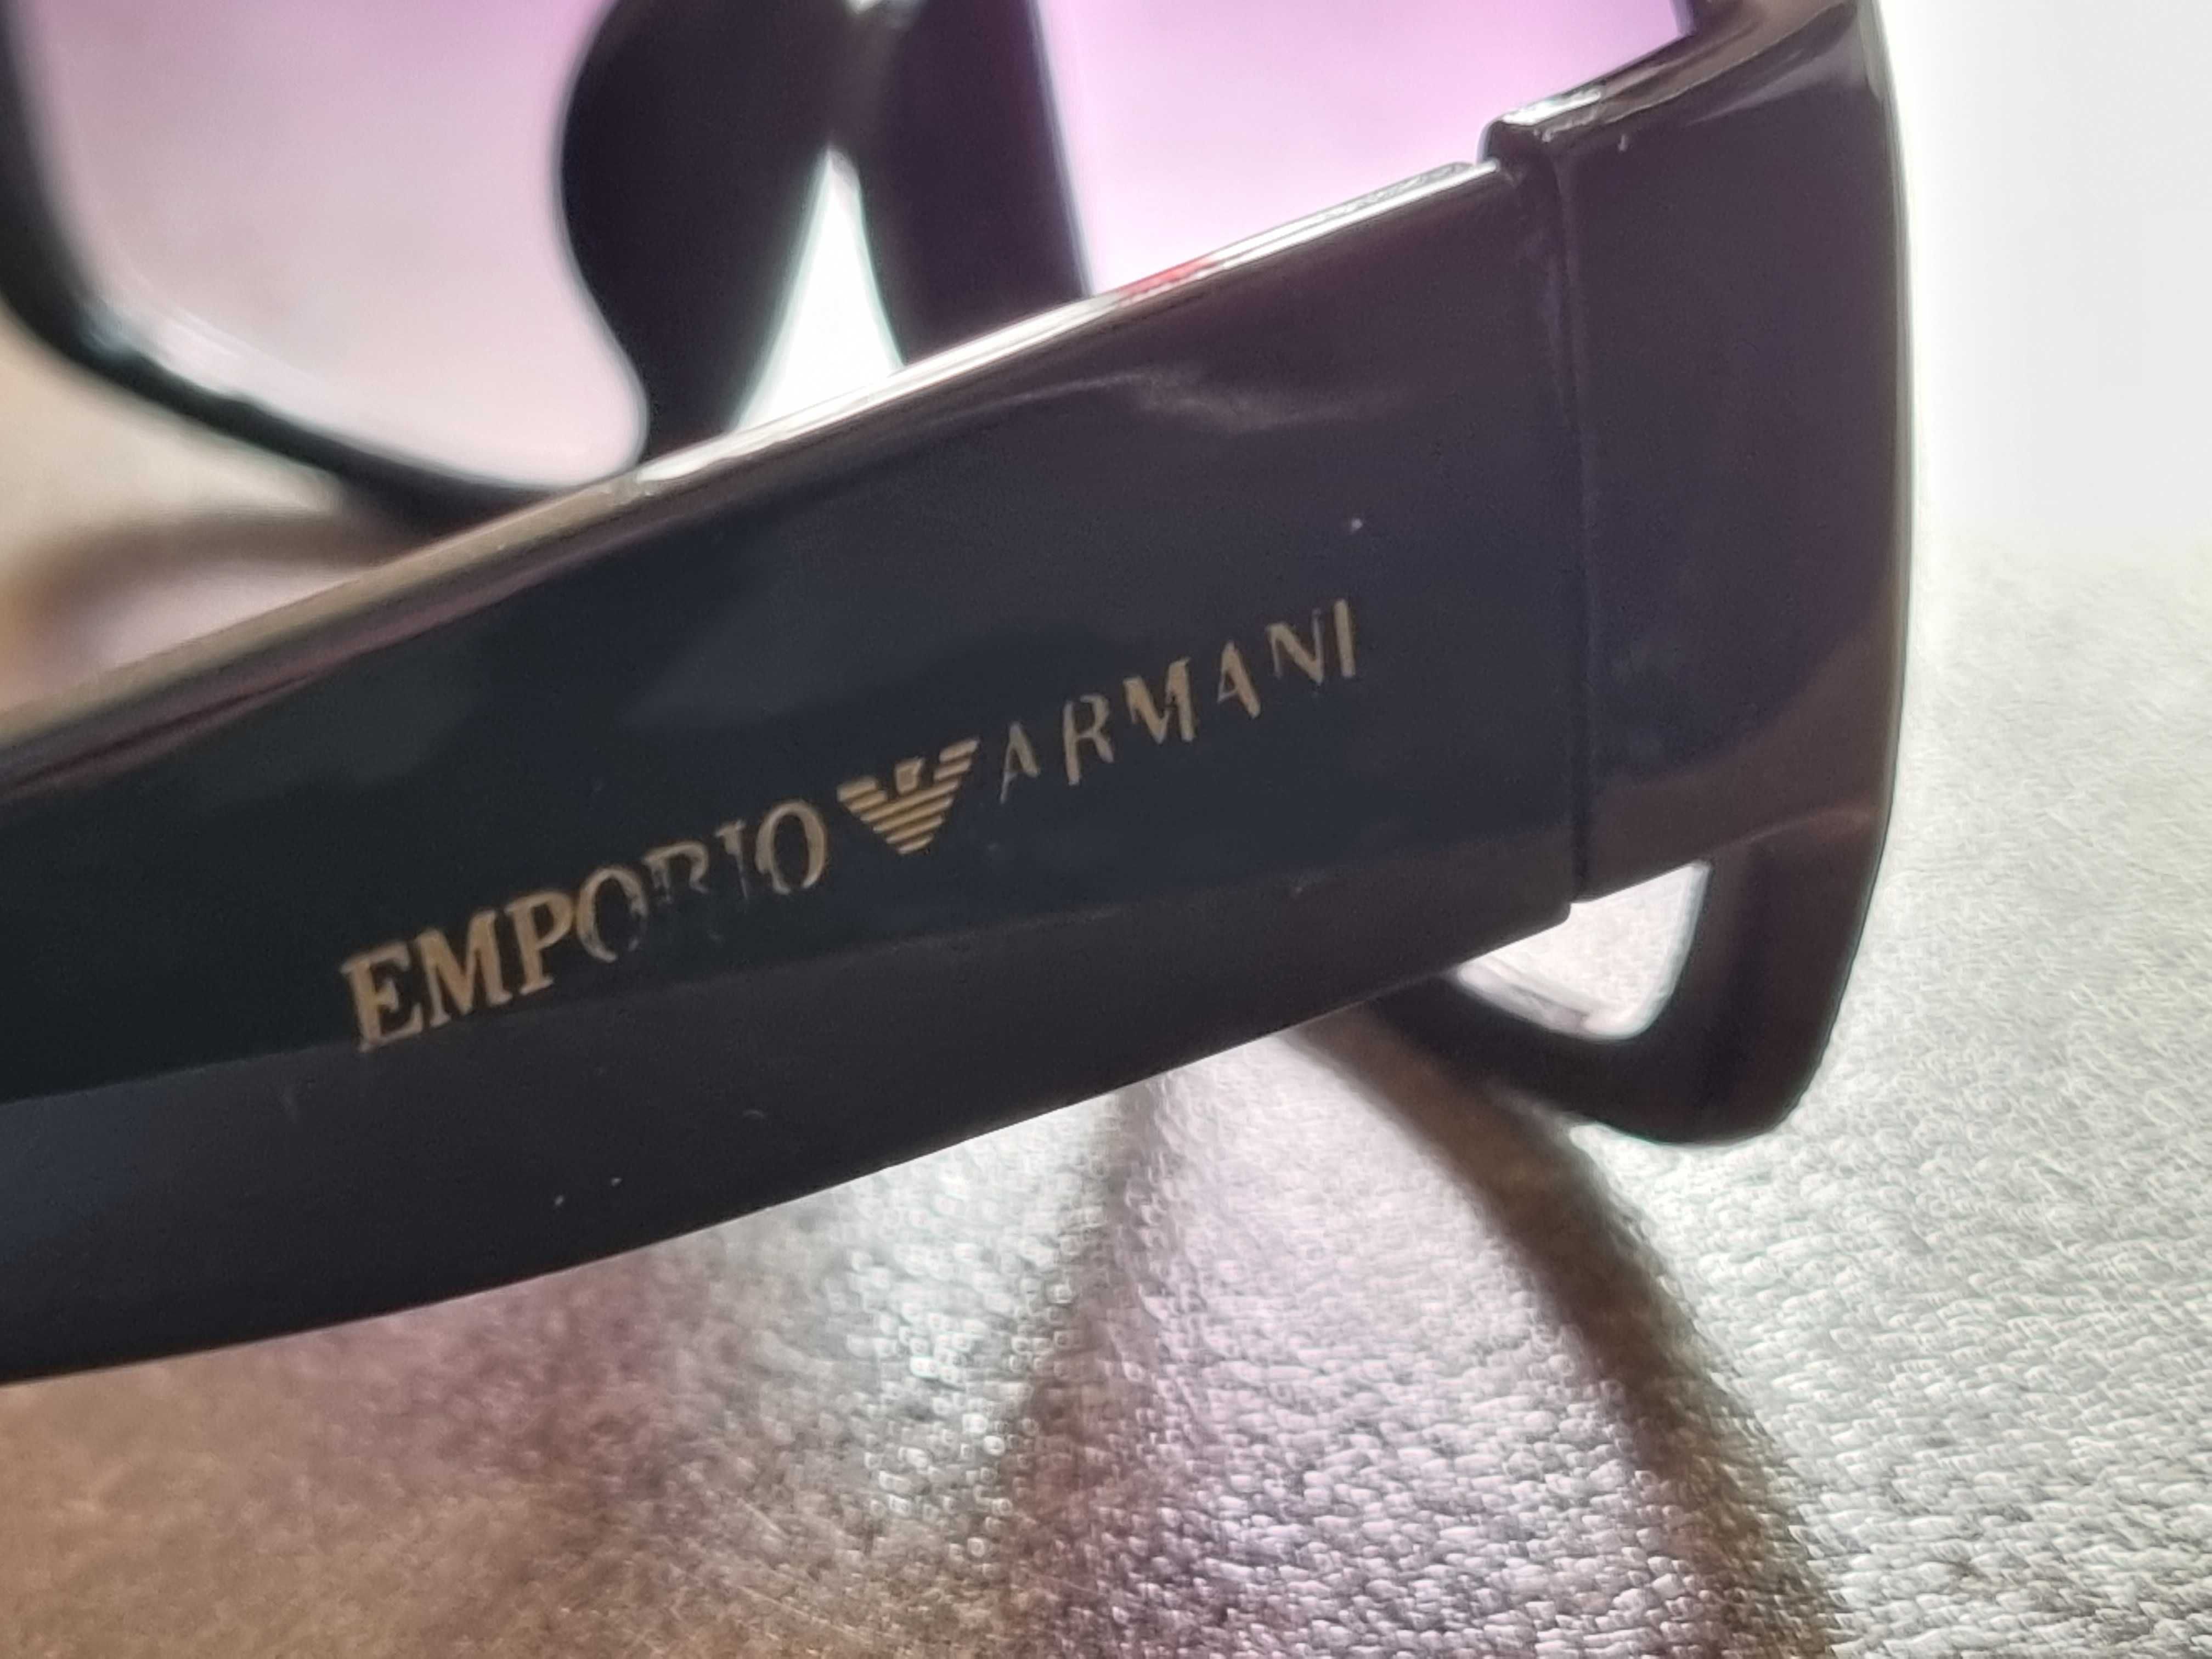 Слънчеви очила Emporio Armani 290 53